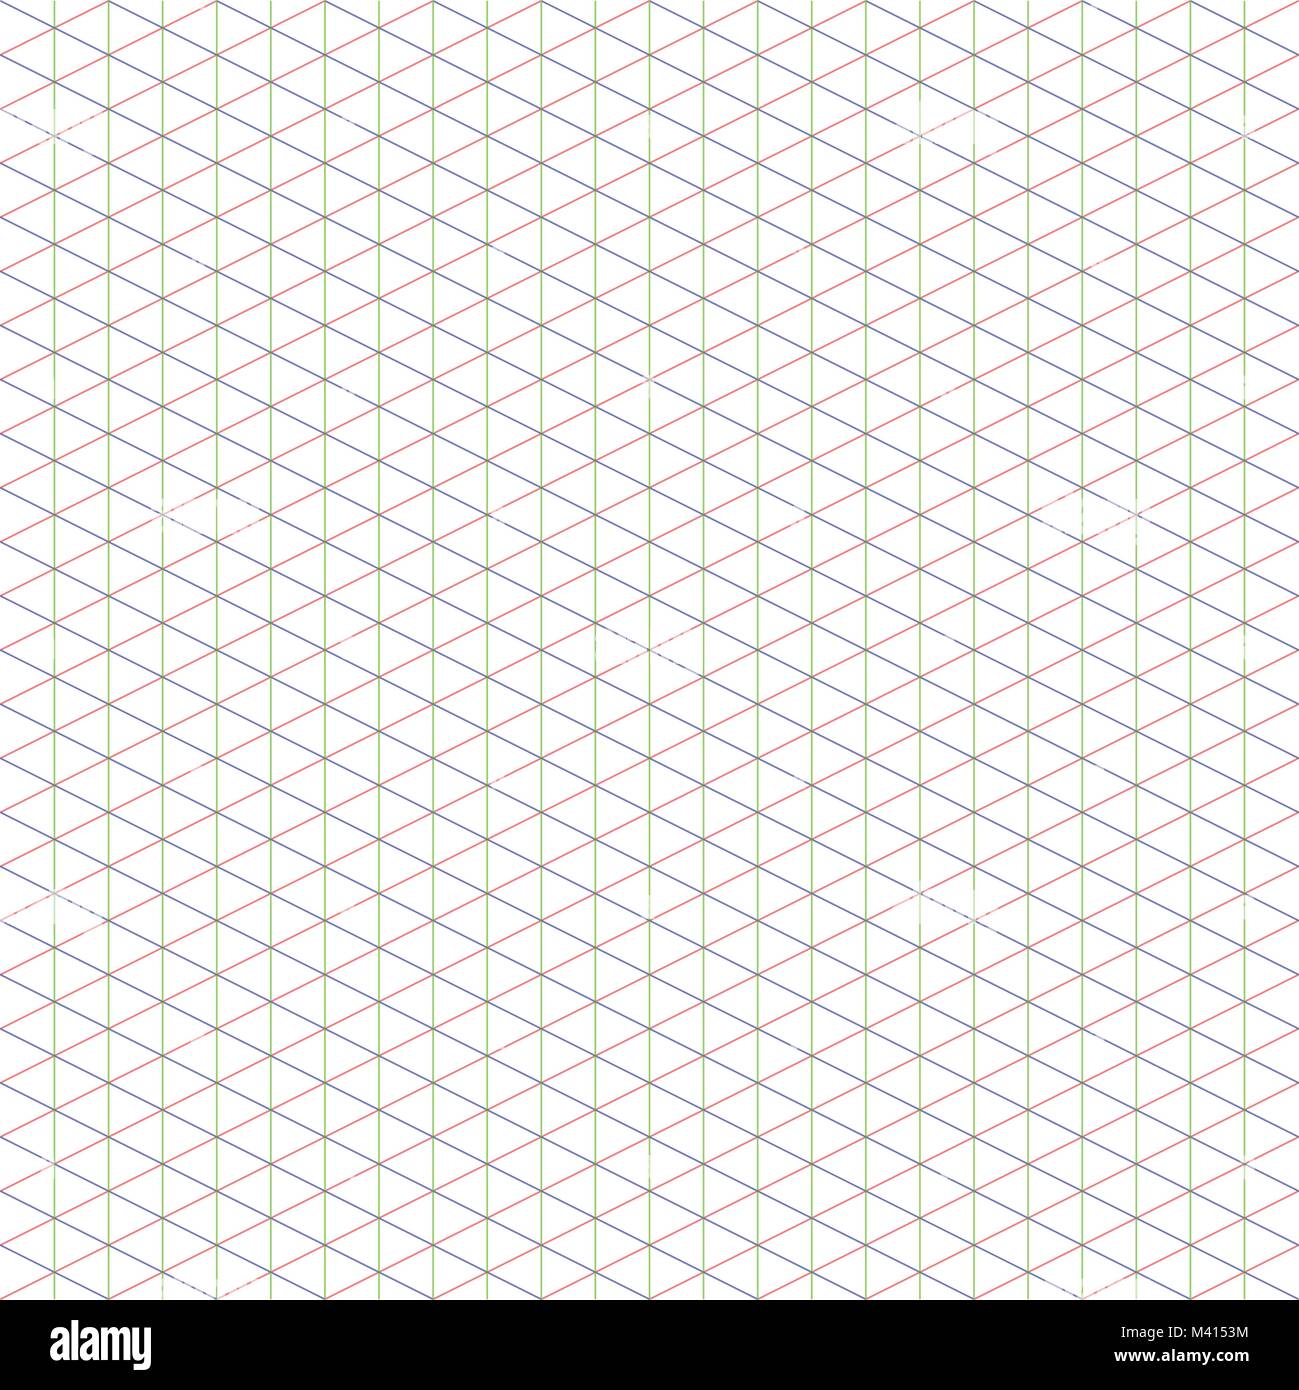 2:1 di grandi dimensioni griglia isometrica ideale per pixel art, con tre assi: x, y, z. Illustrazione Vettoriale